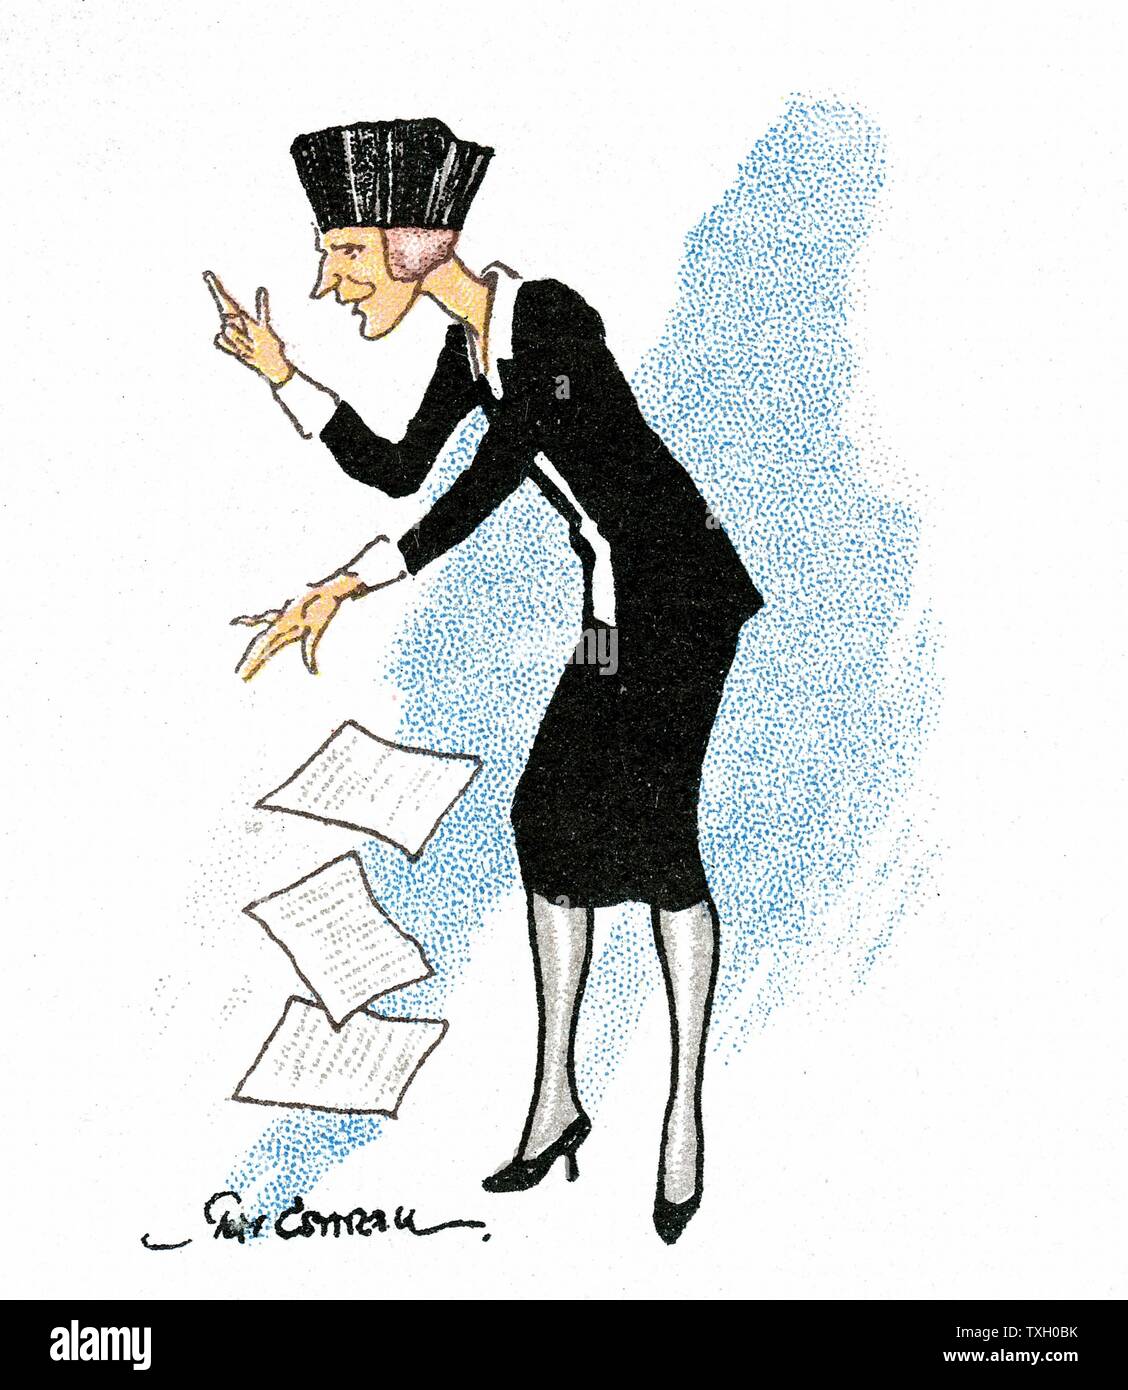 Nancy Witcher Langhorne Astor, Viscountess Astor (1879-1964) eine Rede im Parlament. Amerikaner - geborener britischer Politiker. Konservative Abgeordnete für Plymouth 1919. Erste Frau ihren Sitz im House of Commons. Cartoon. Karte veröffentlicht London 1929 Stockfoto